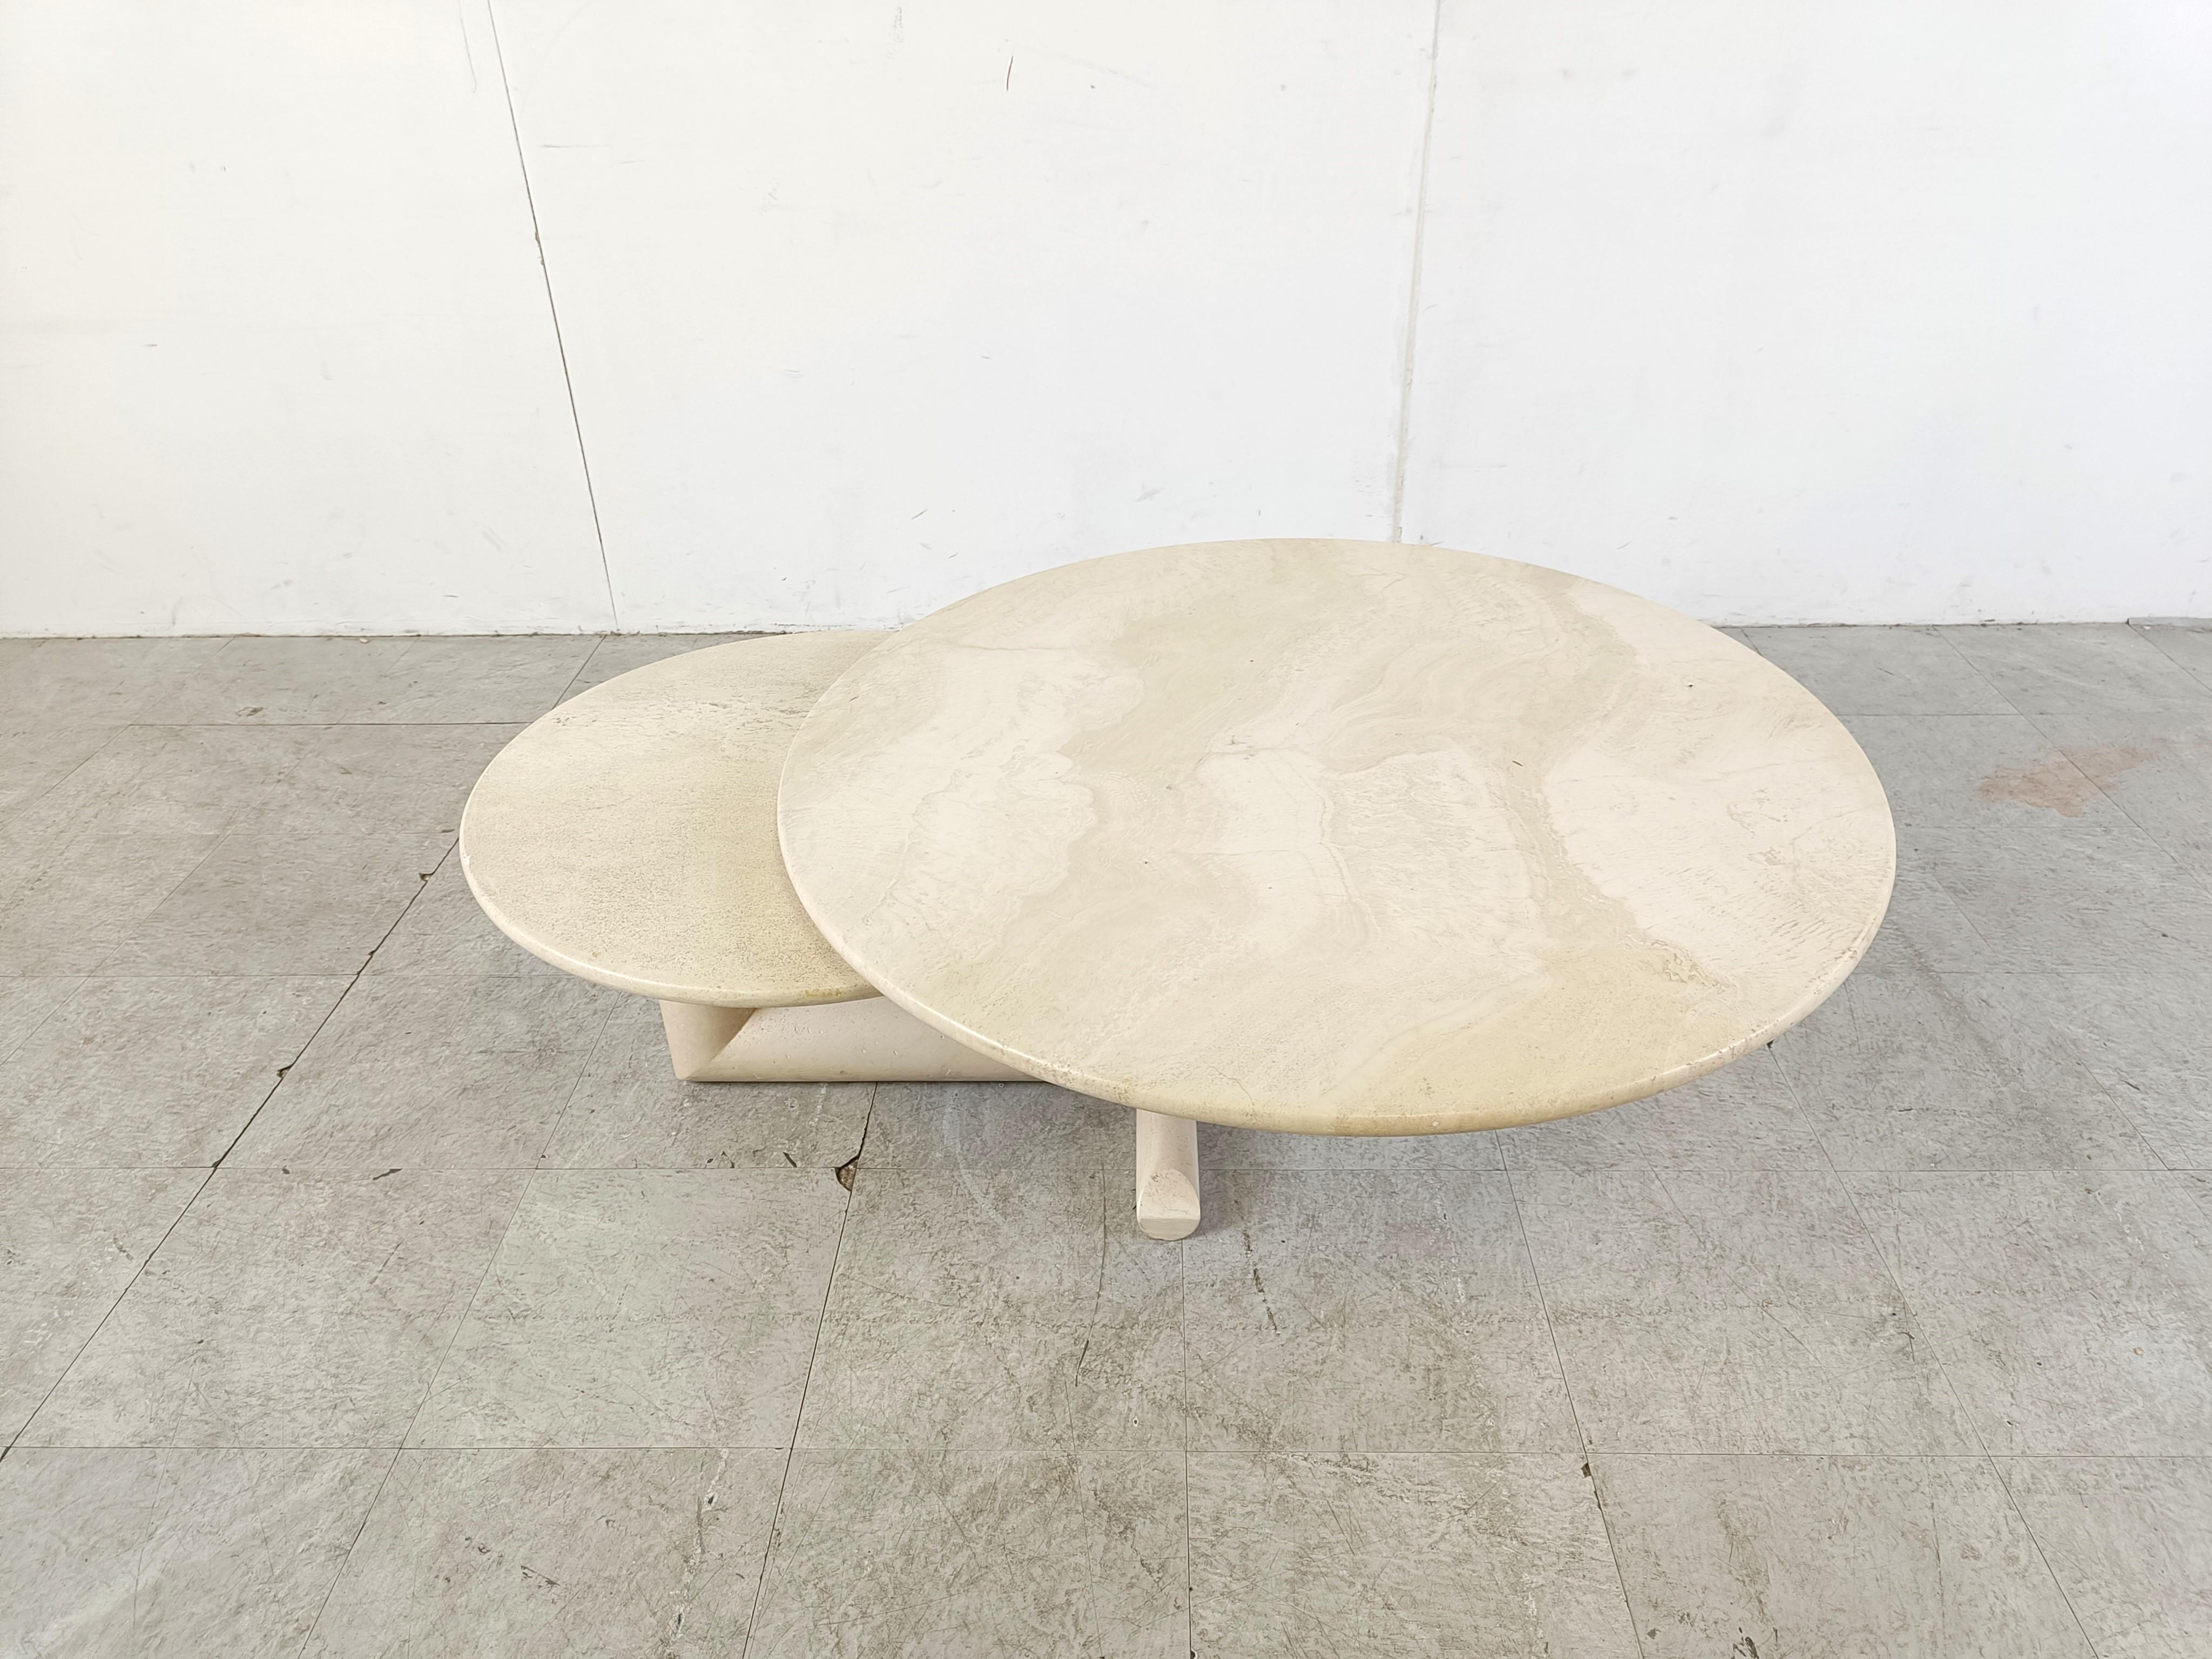 Magnifique table basse en travertin avec deux plateaux pivotants réglables pour Roche Bobois.

De beaux plateaux de table ronds et une base de forme tubulaire.

Belle pierre naturelle en travertin utilisée dans l'ensemble de la maison.

Bon